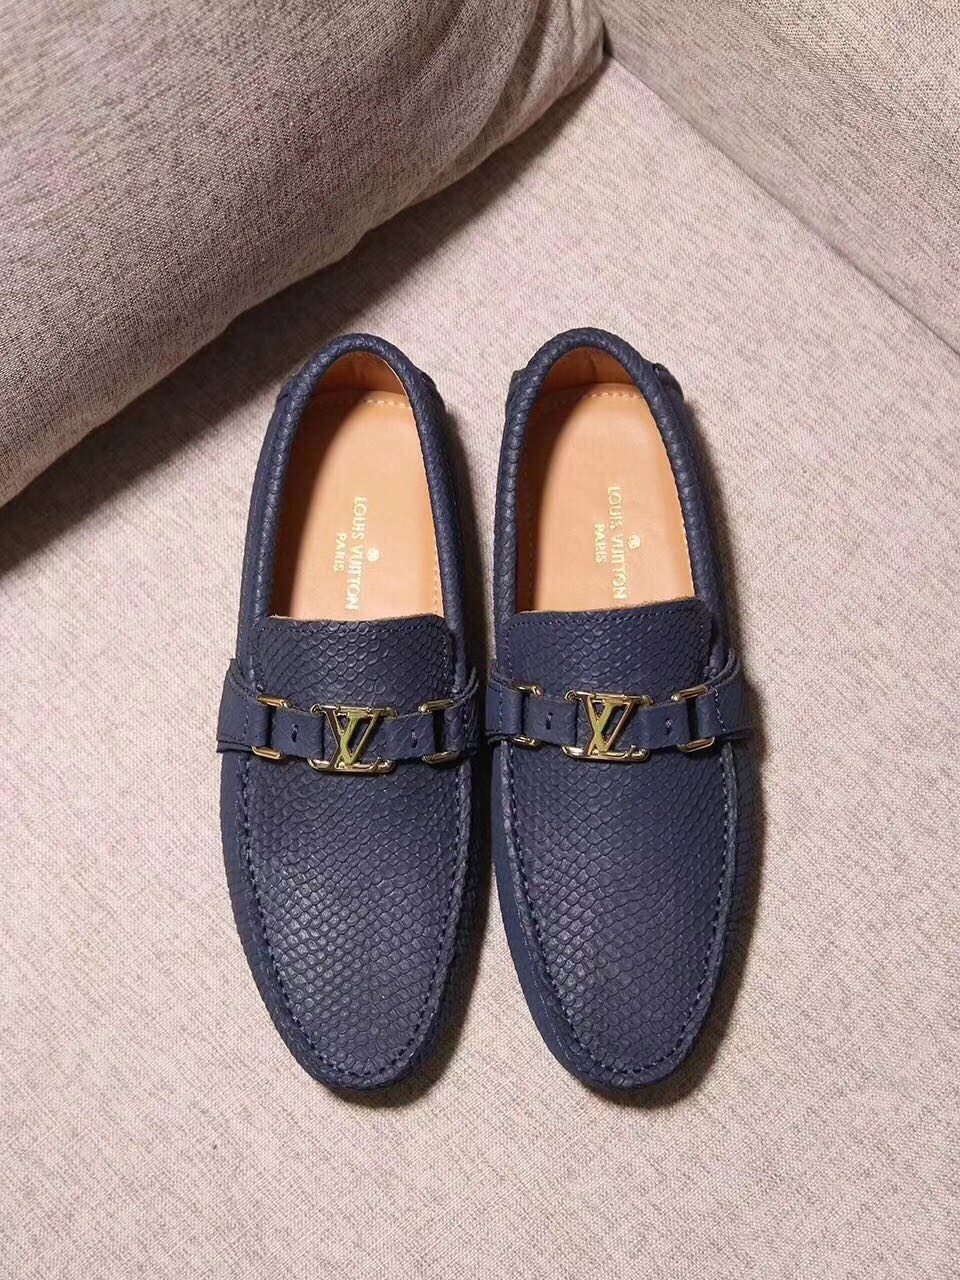 Giày lười nam Louis Vuitton siêu cấp - GNLV070